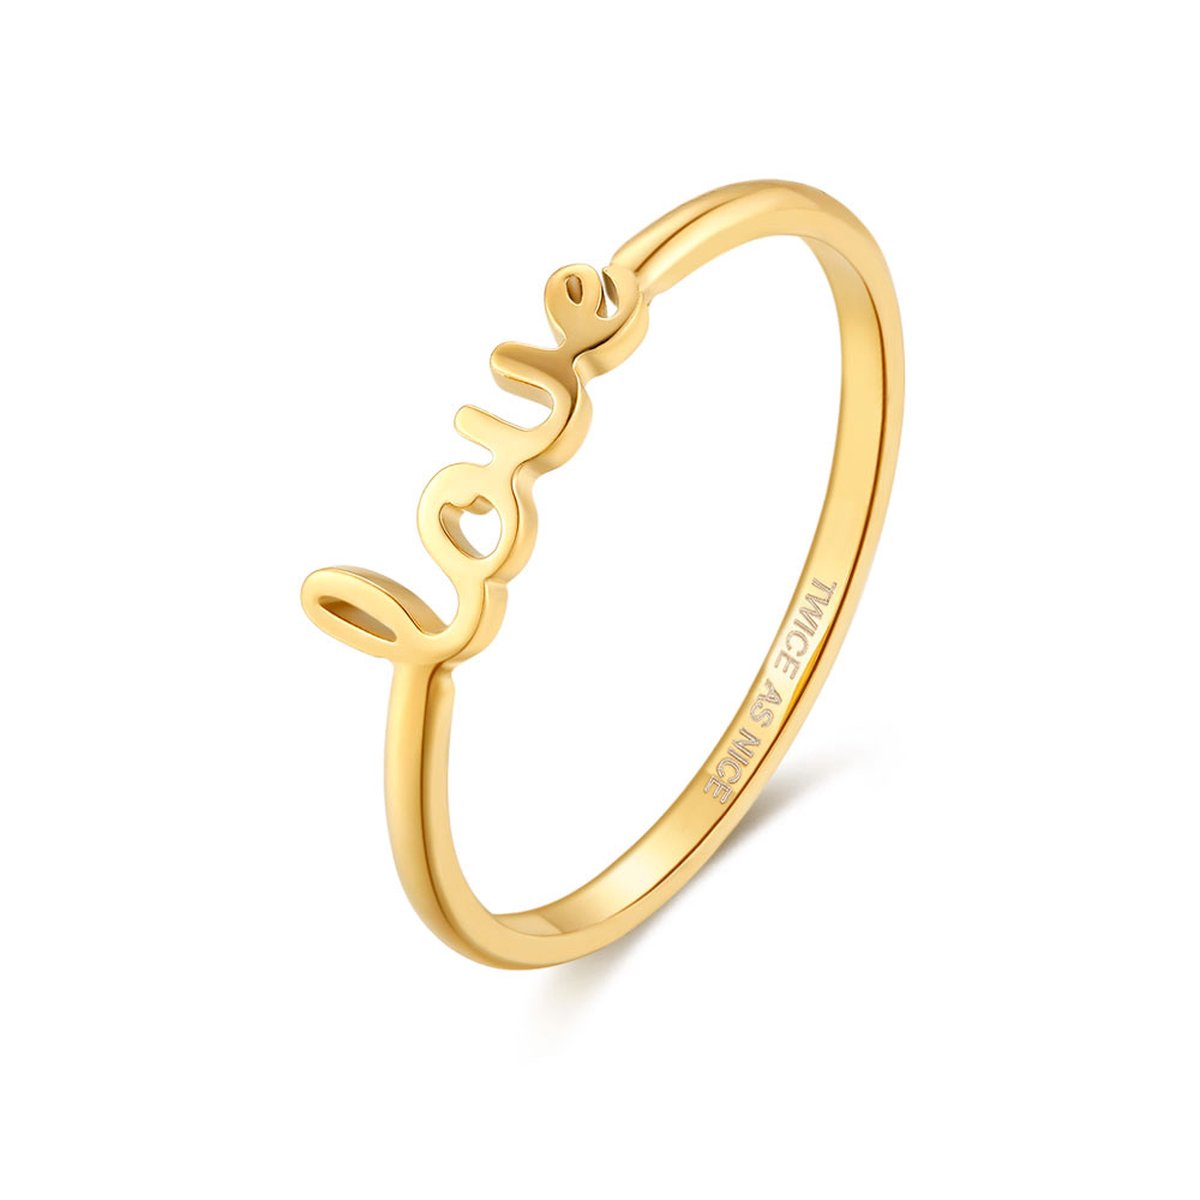 Twice As Nice Ring in goudkleurig edelstaal, love 48